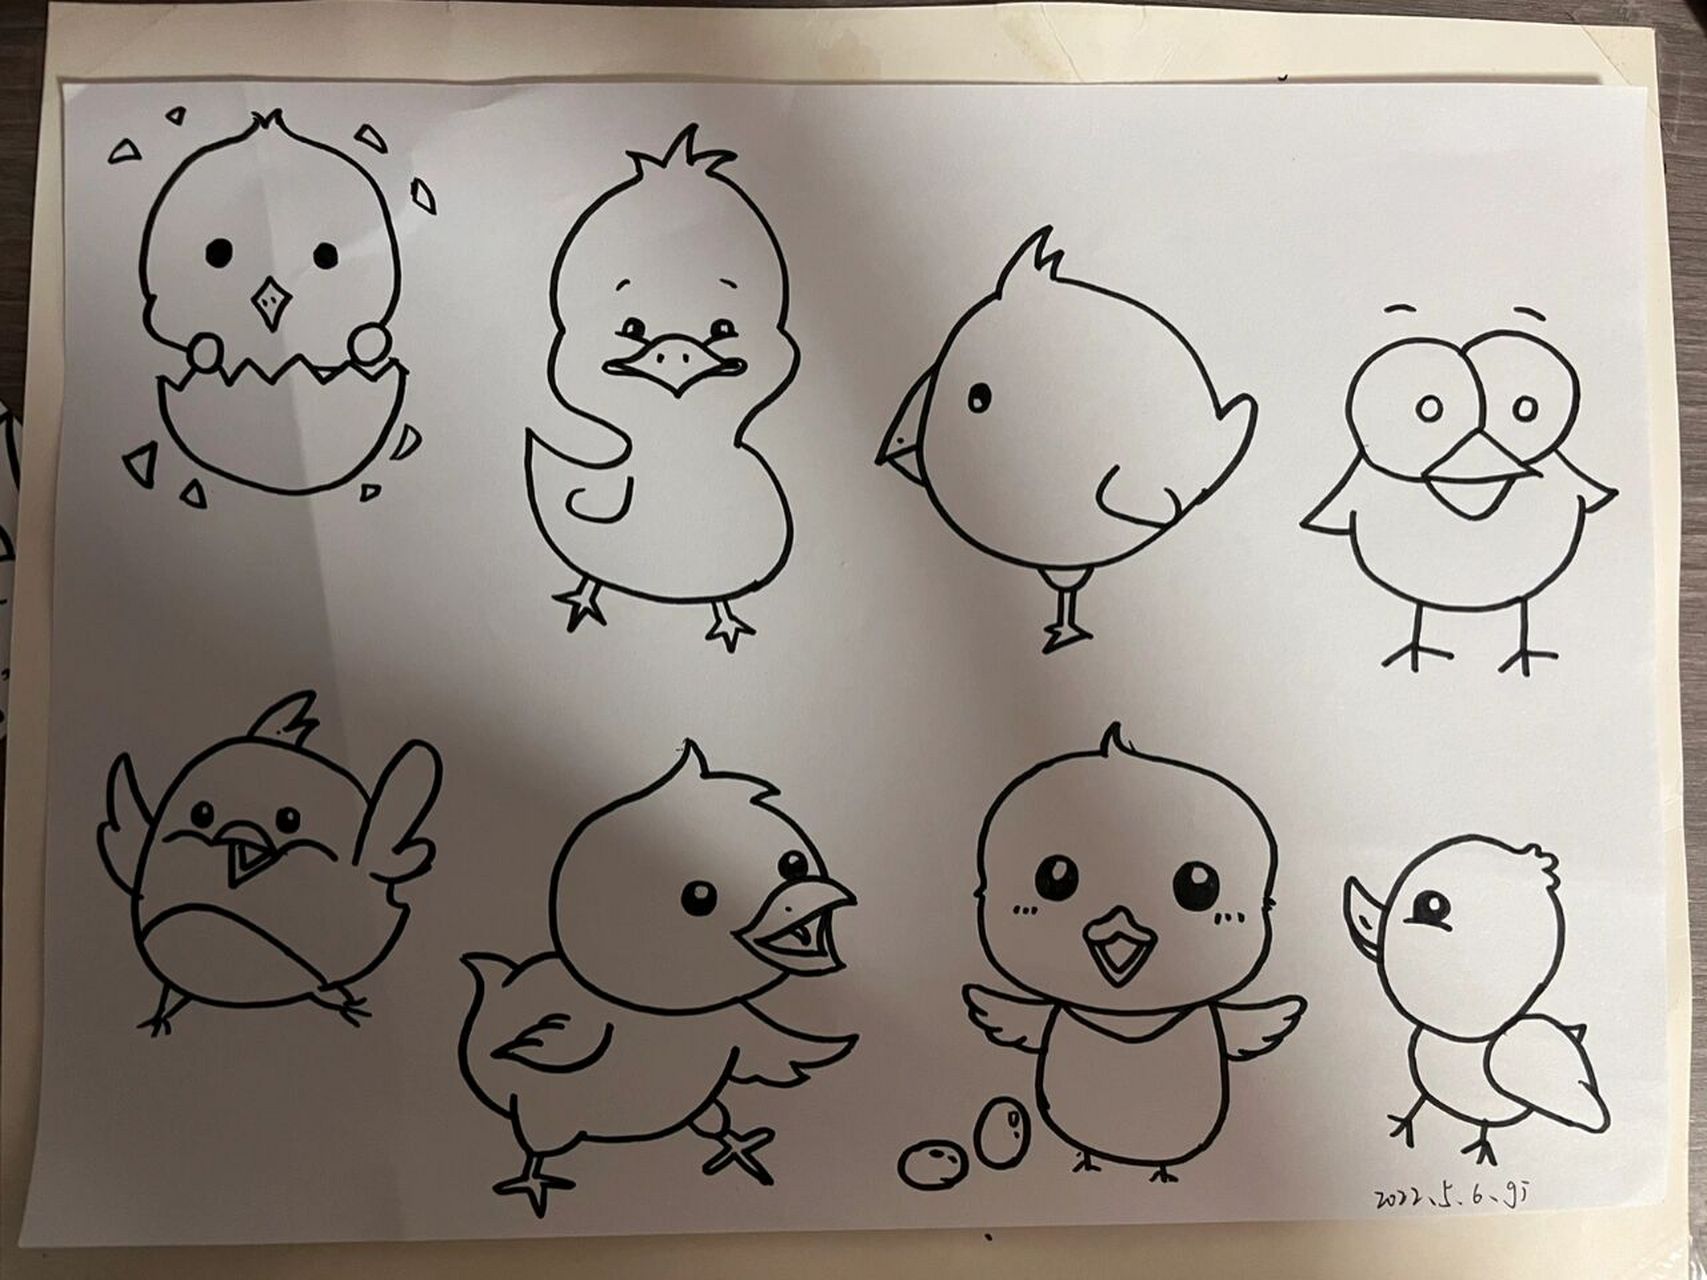 小鸡简笔画幼儿园图片